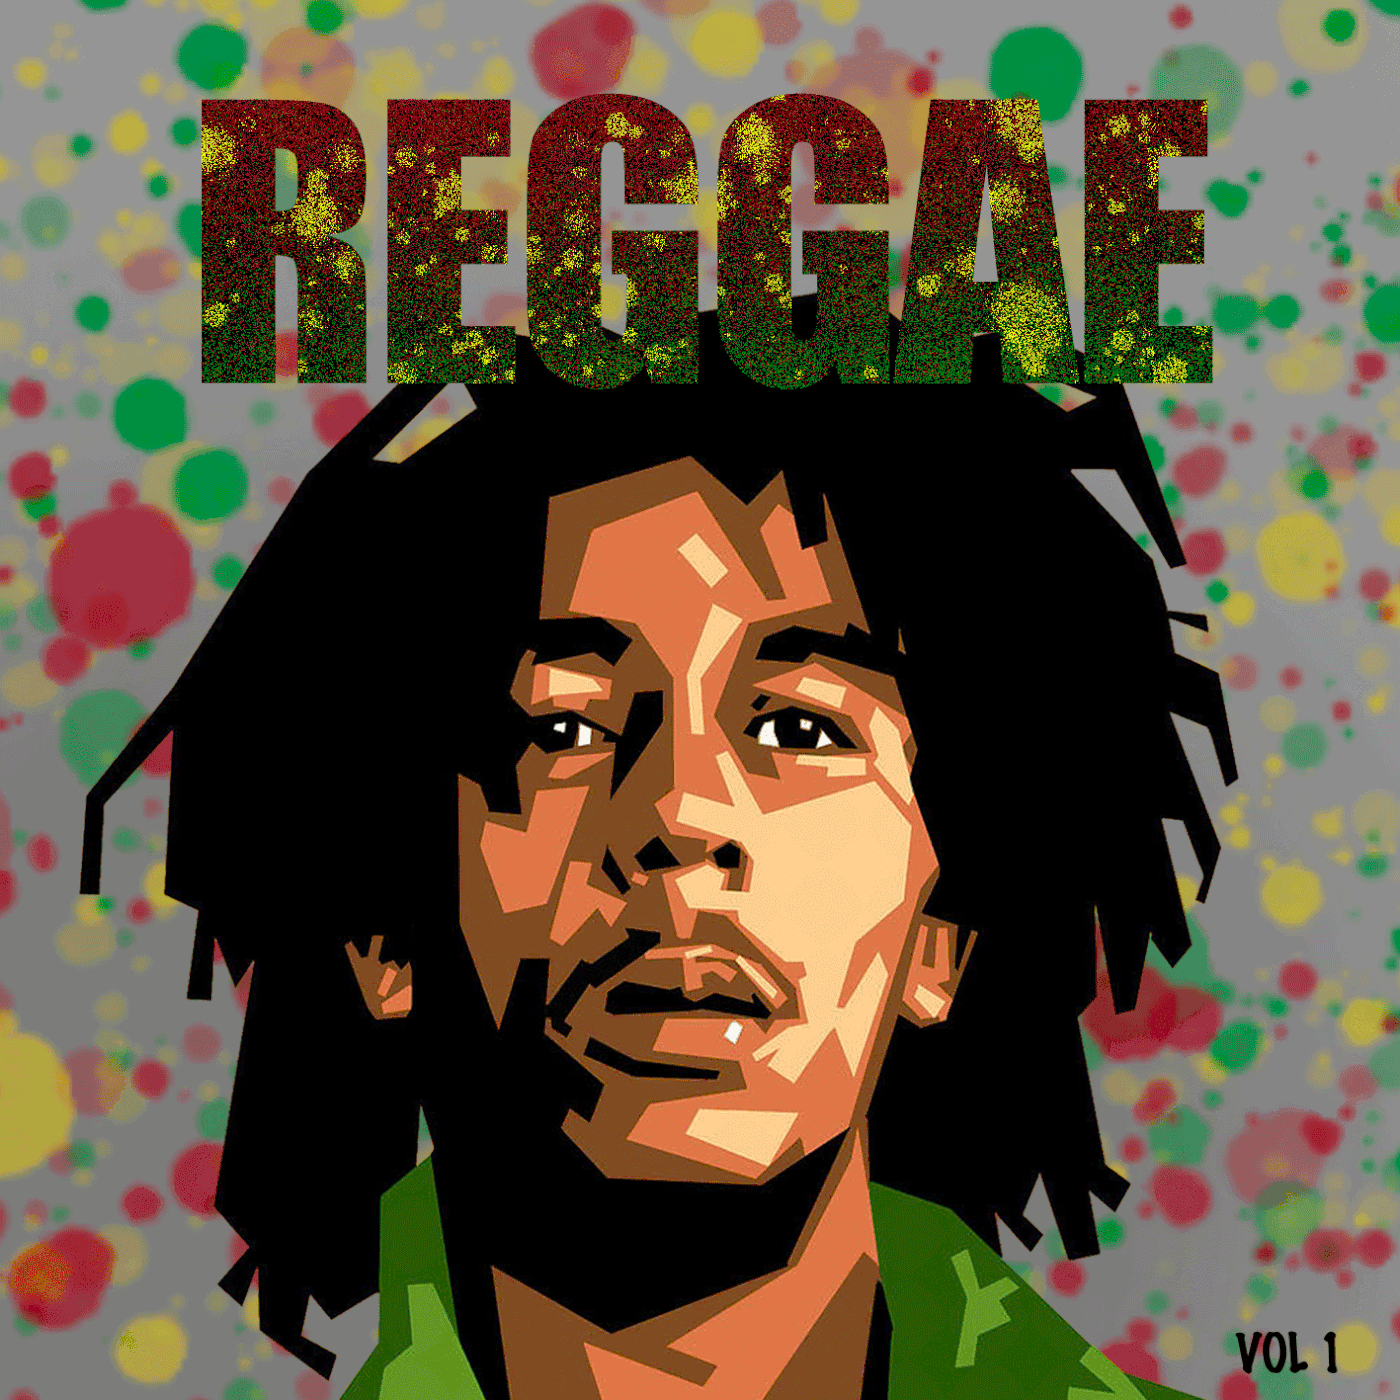 caratulas discos gif jamica musica portadas reggae